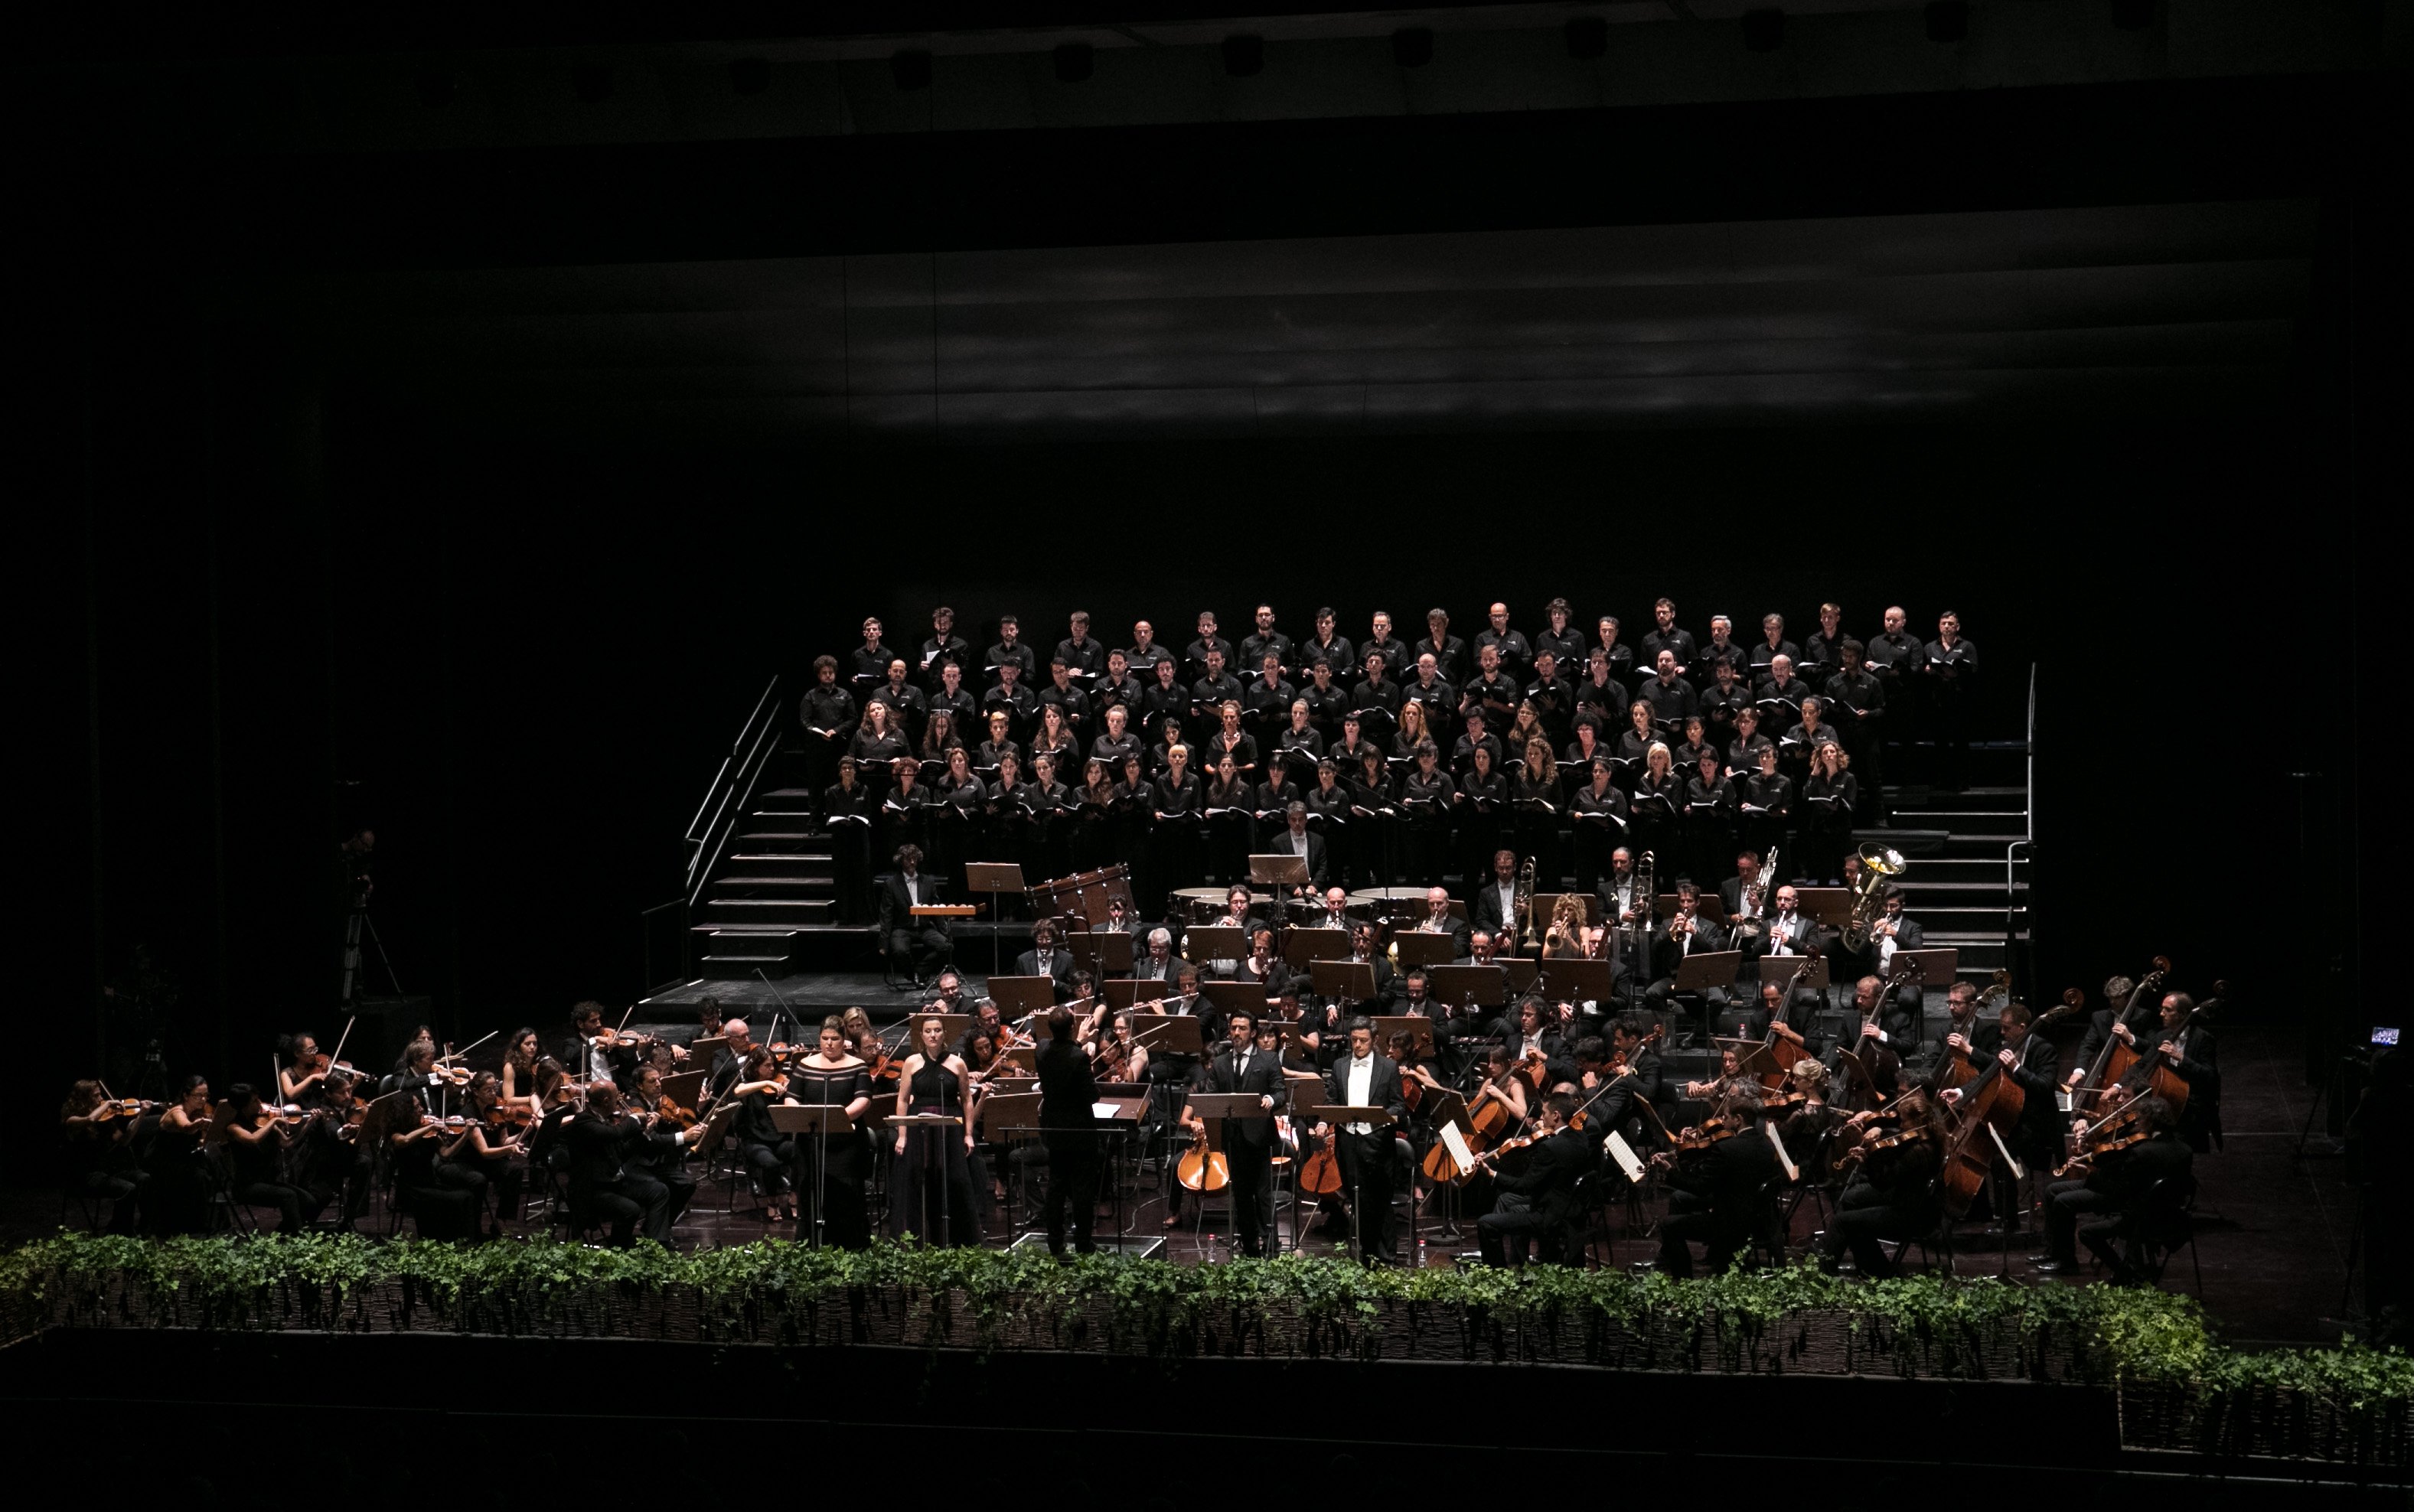 Polèmica per la prohibició del llaç groc en un concert del Rèquiem de Verdi